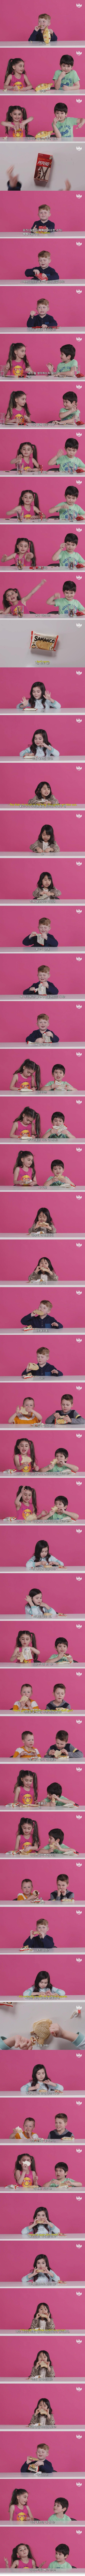 한국 과자를 먹어본 외국 어린이들 반응.jpg